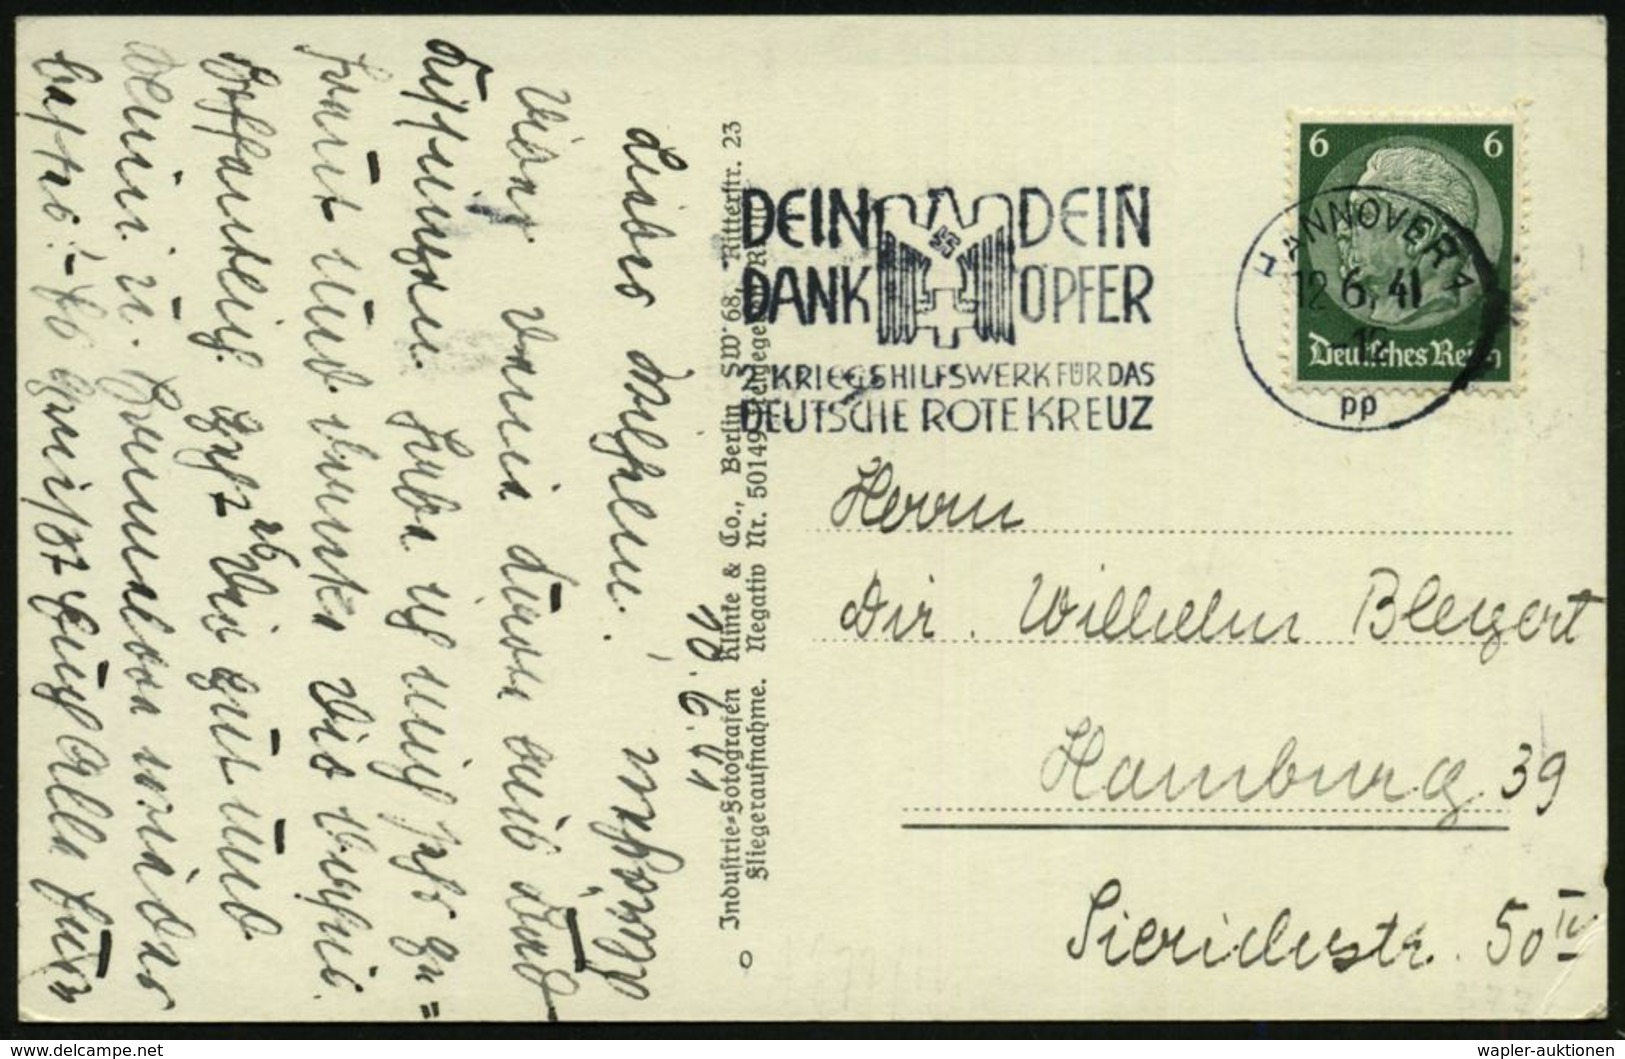 HANNOVER 1/ Pp/ DEIN/ DANK/ DEIN/ OPFER/ 2.KRIEGSHILFSWERK FÜR DAS/ DRK 1941 (12.6.) MWSt (NS-DRK-Logo) Klar Gest. S/w.- - Rode Kruis